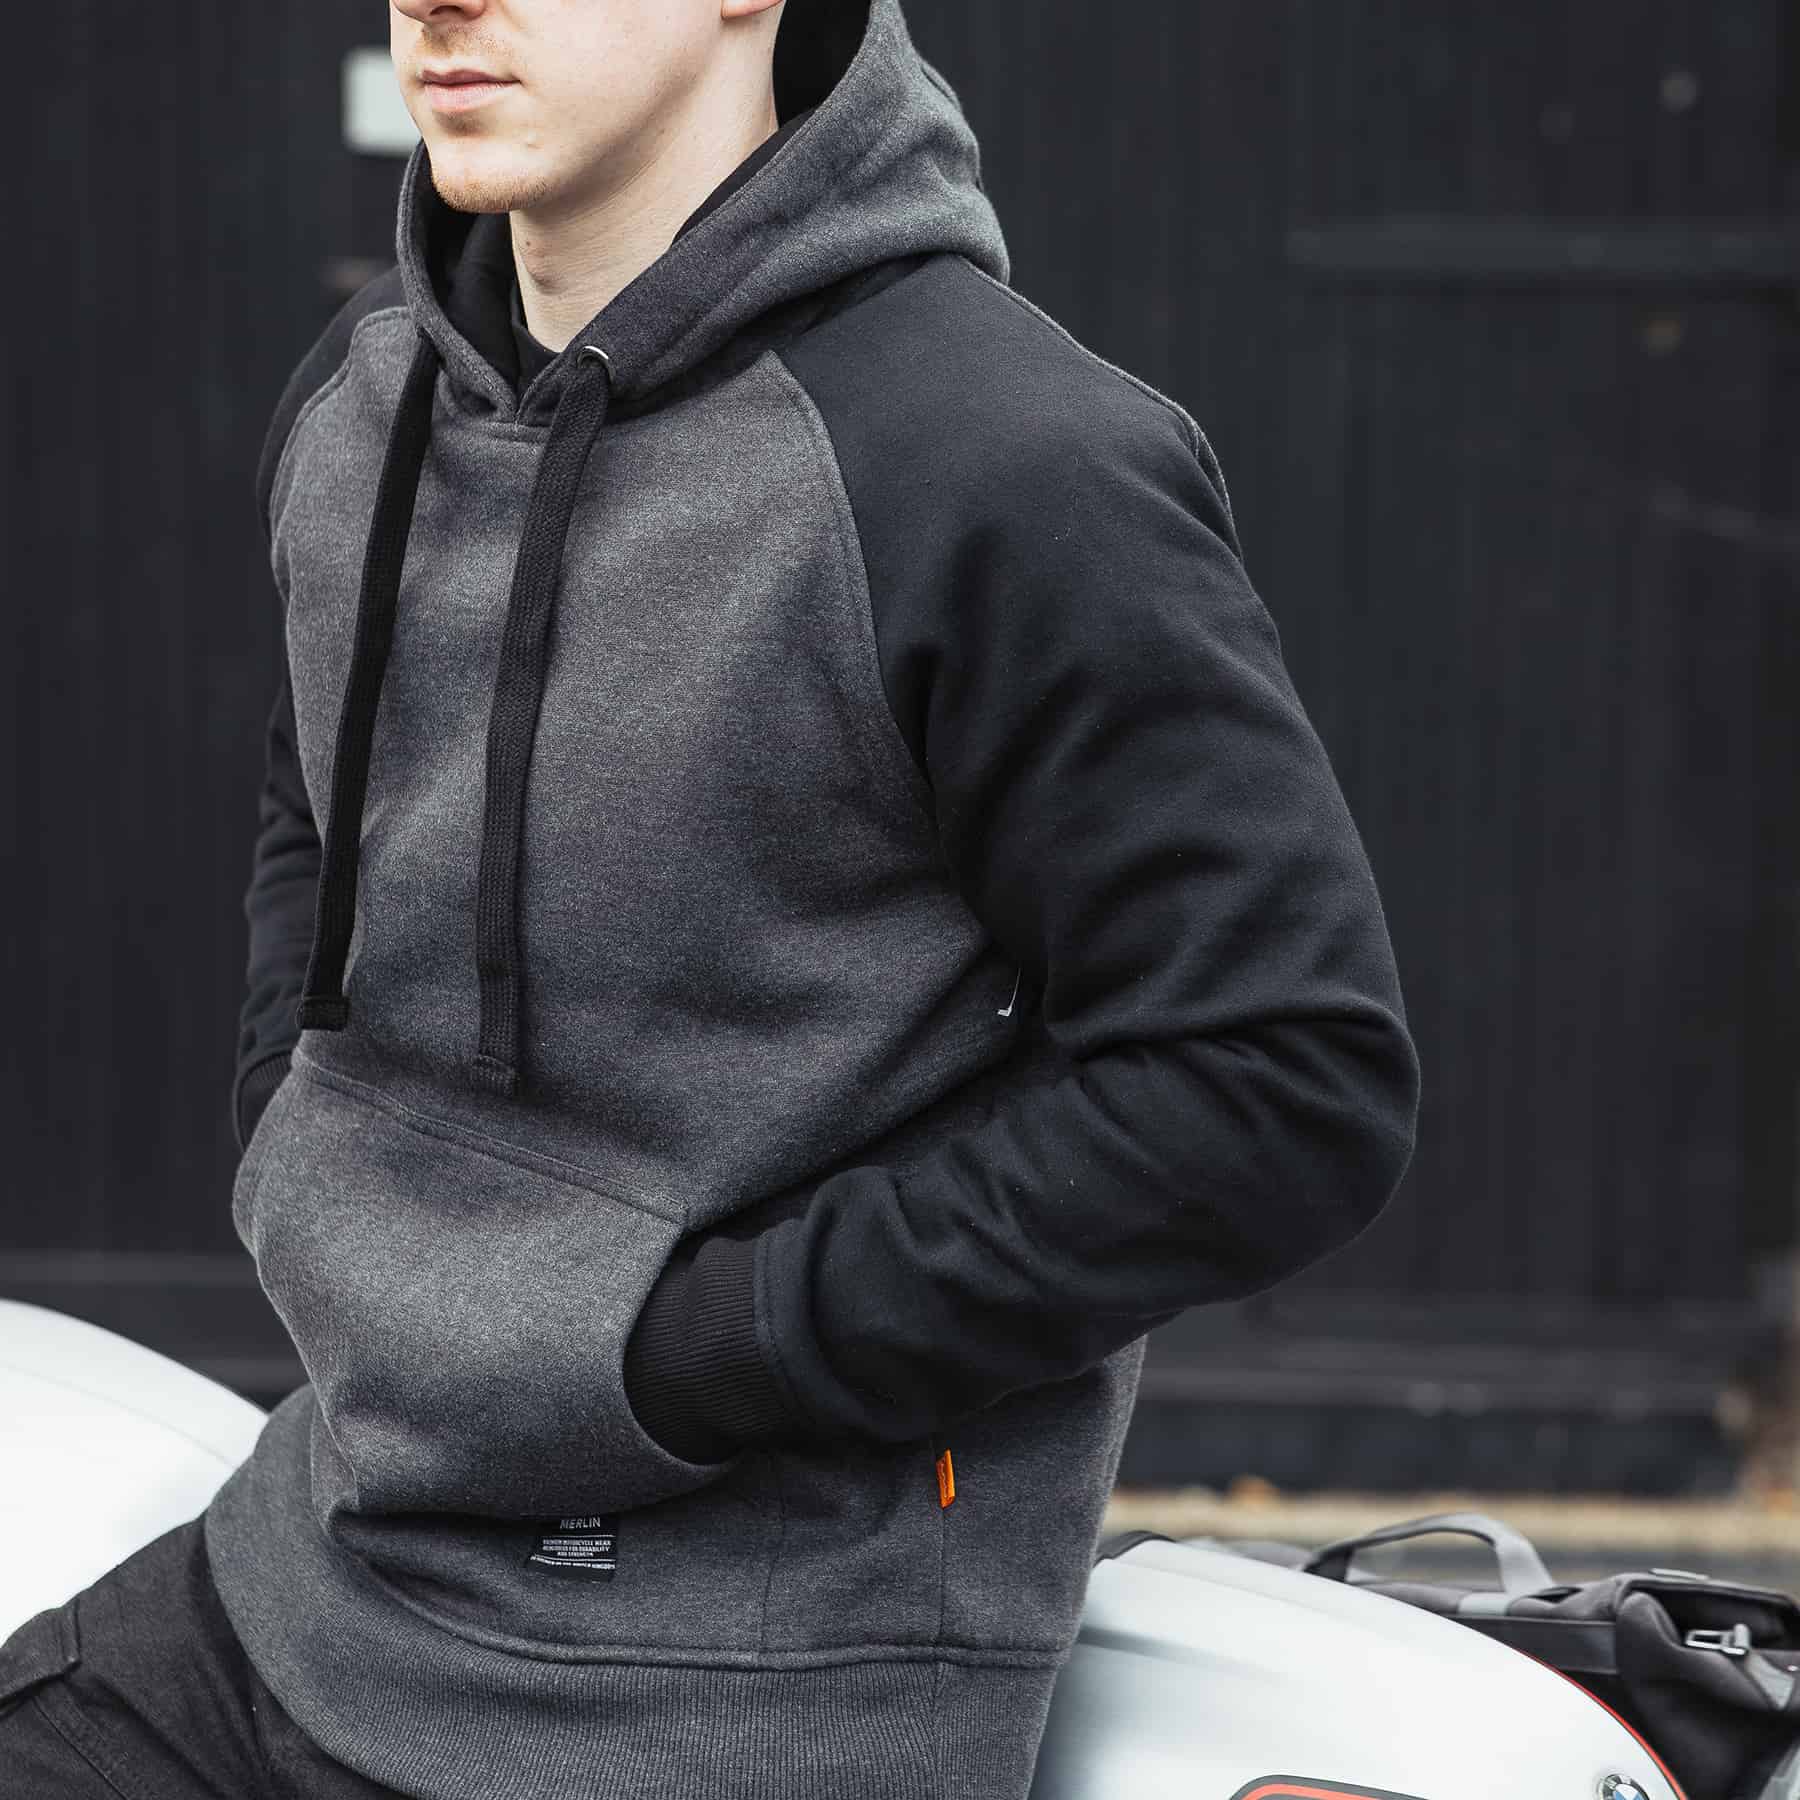 Merlin Stealth Pro hoodie in black/grey